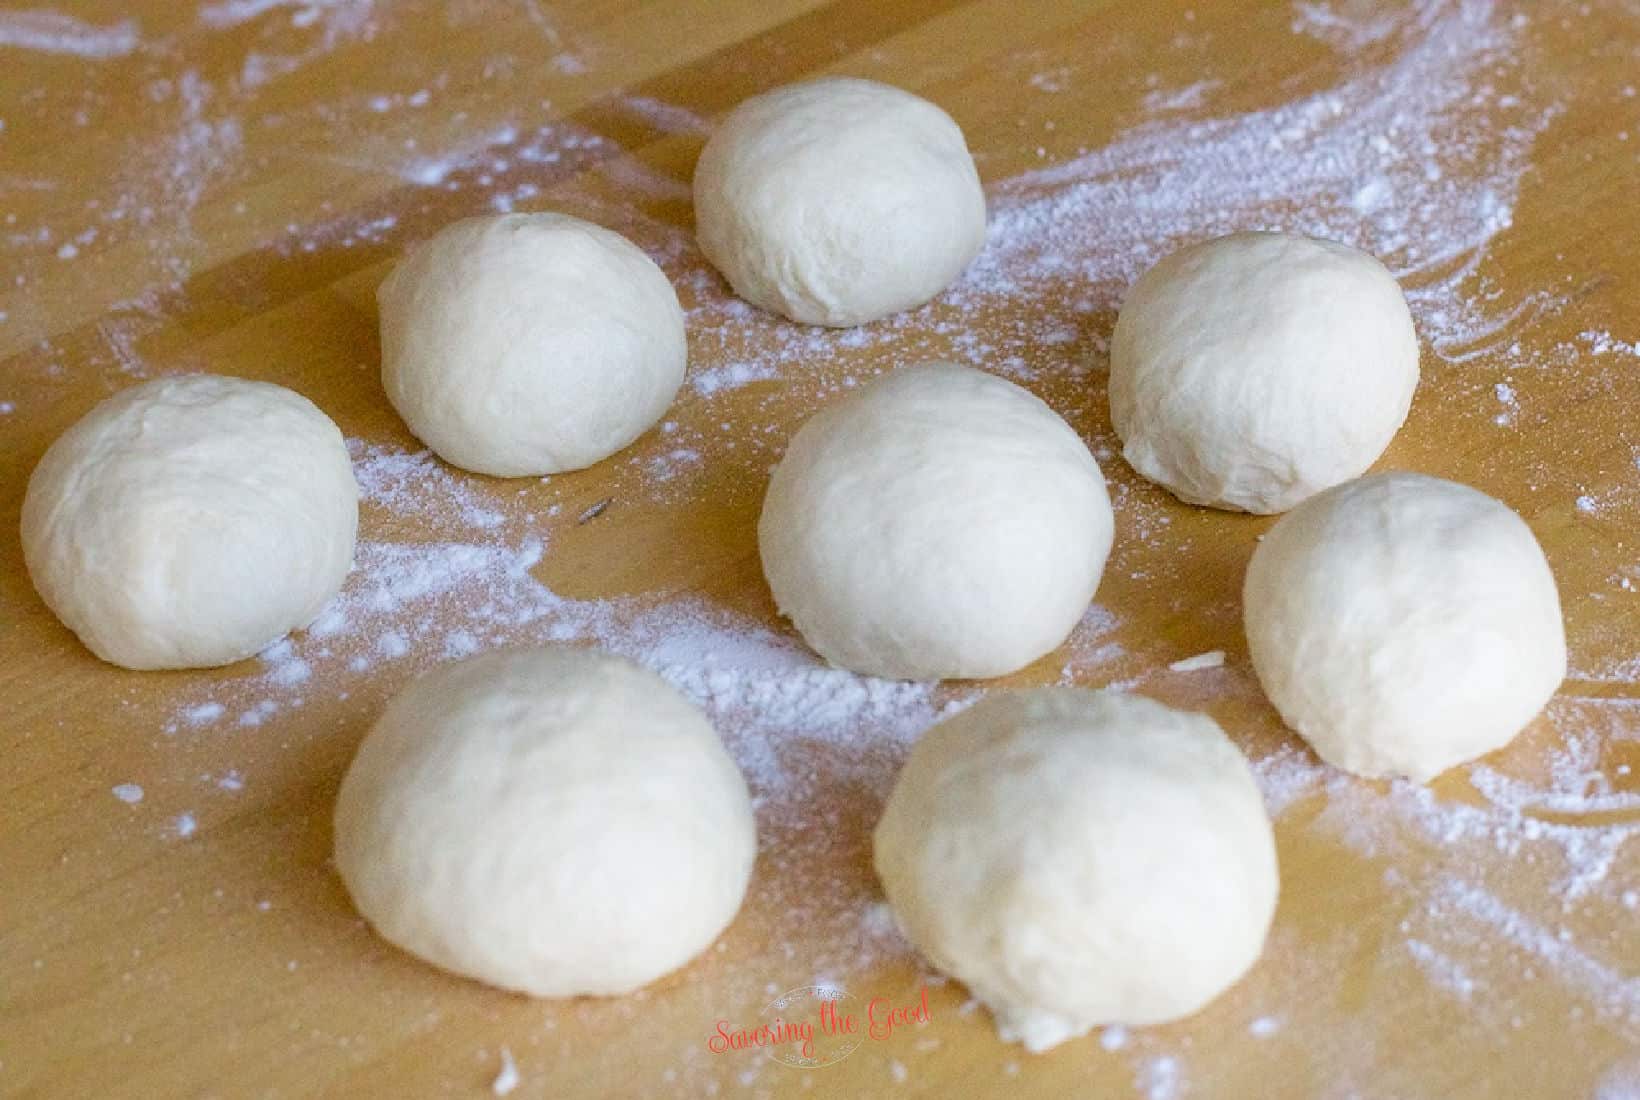 8 balls of Naan Bread dough